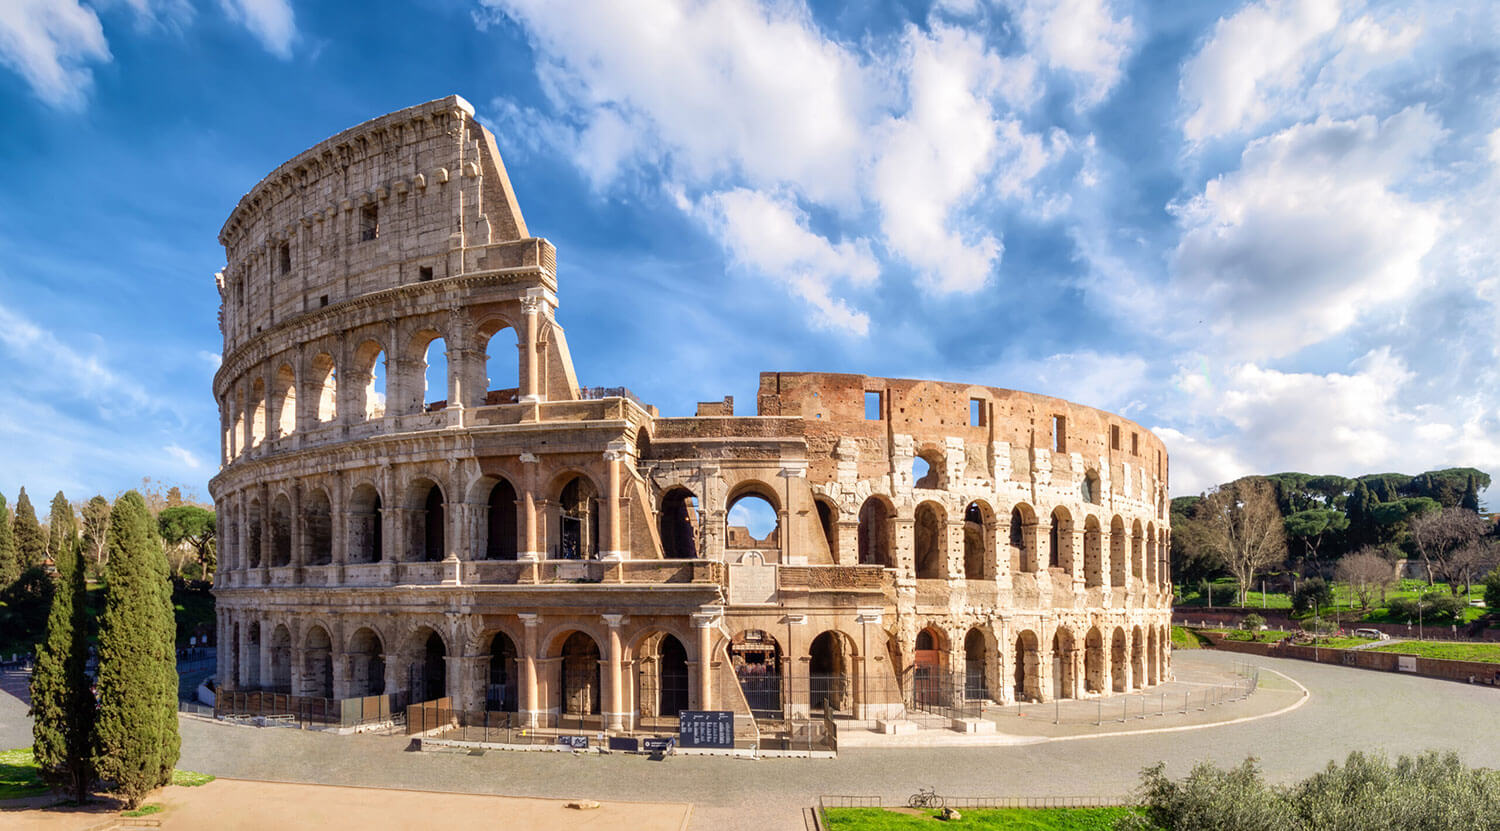 Колизей в Риме, описание и фото главной достопримечательности Италии